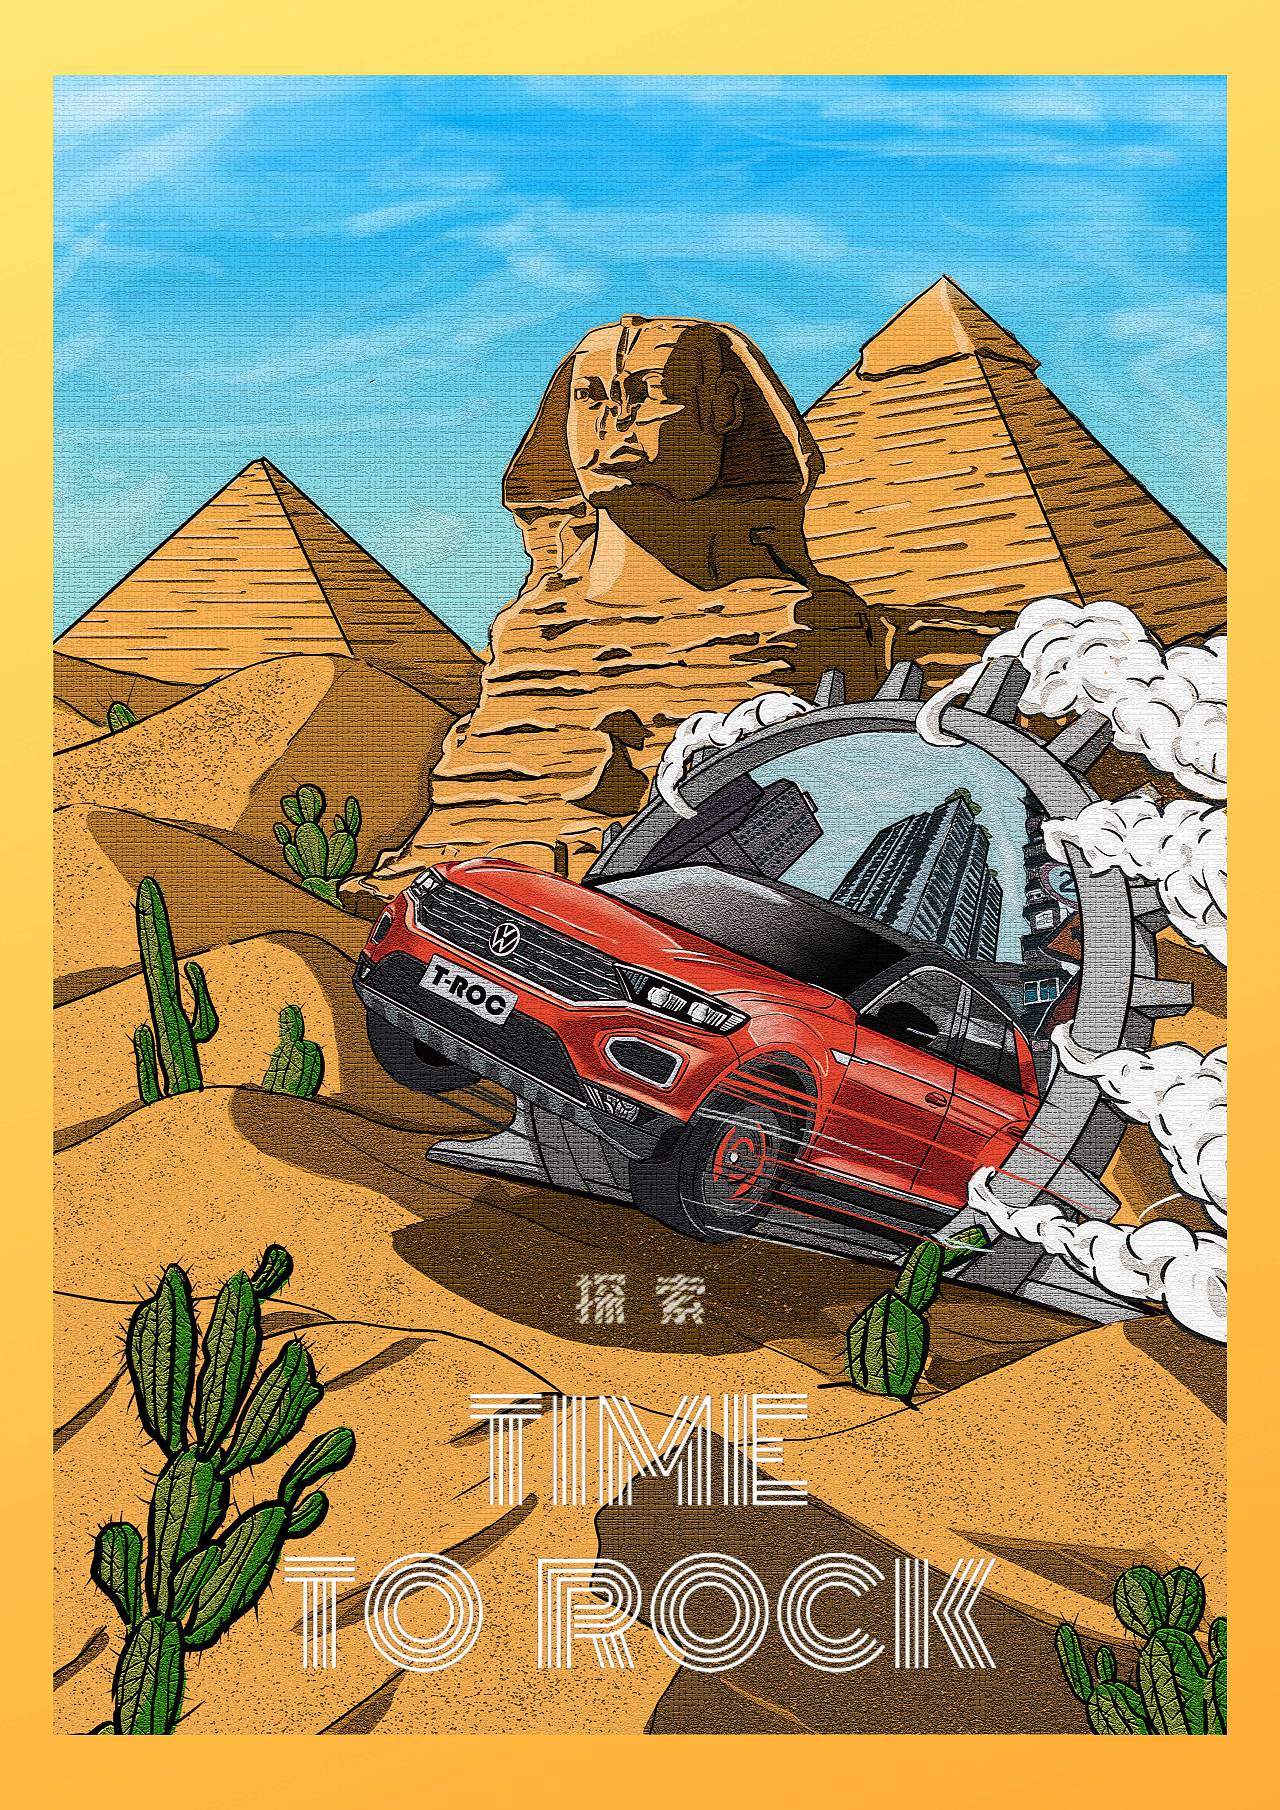 画的一组大众探戈的商业海报,画了好久,汽车的质感确实难表现,不过